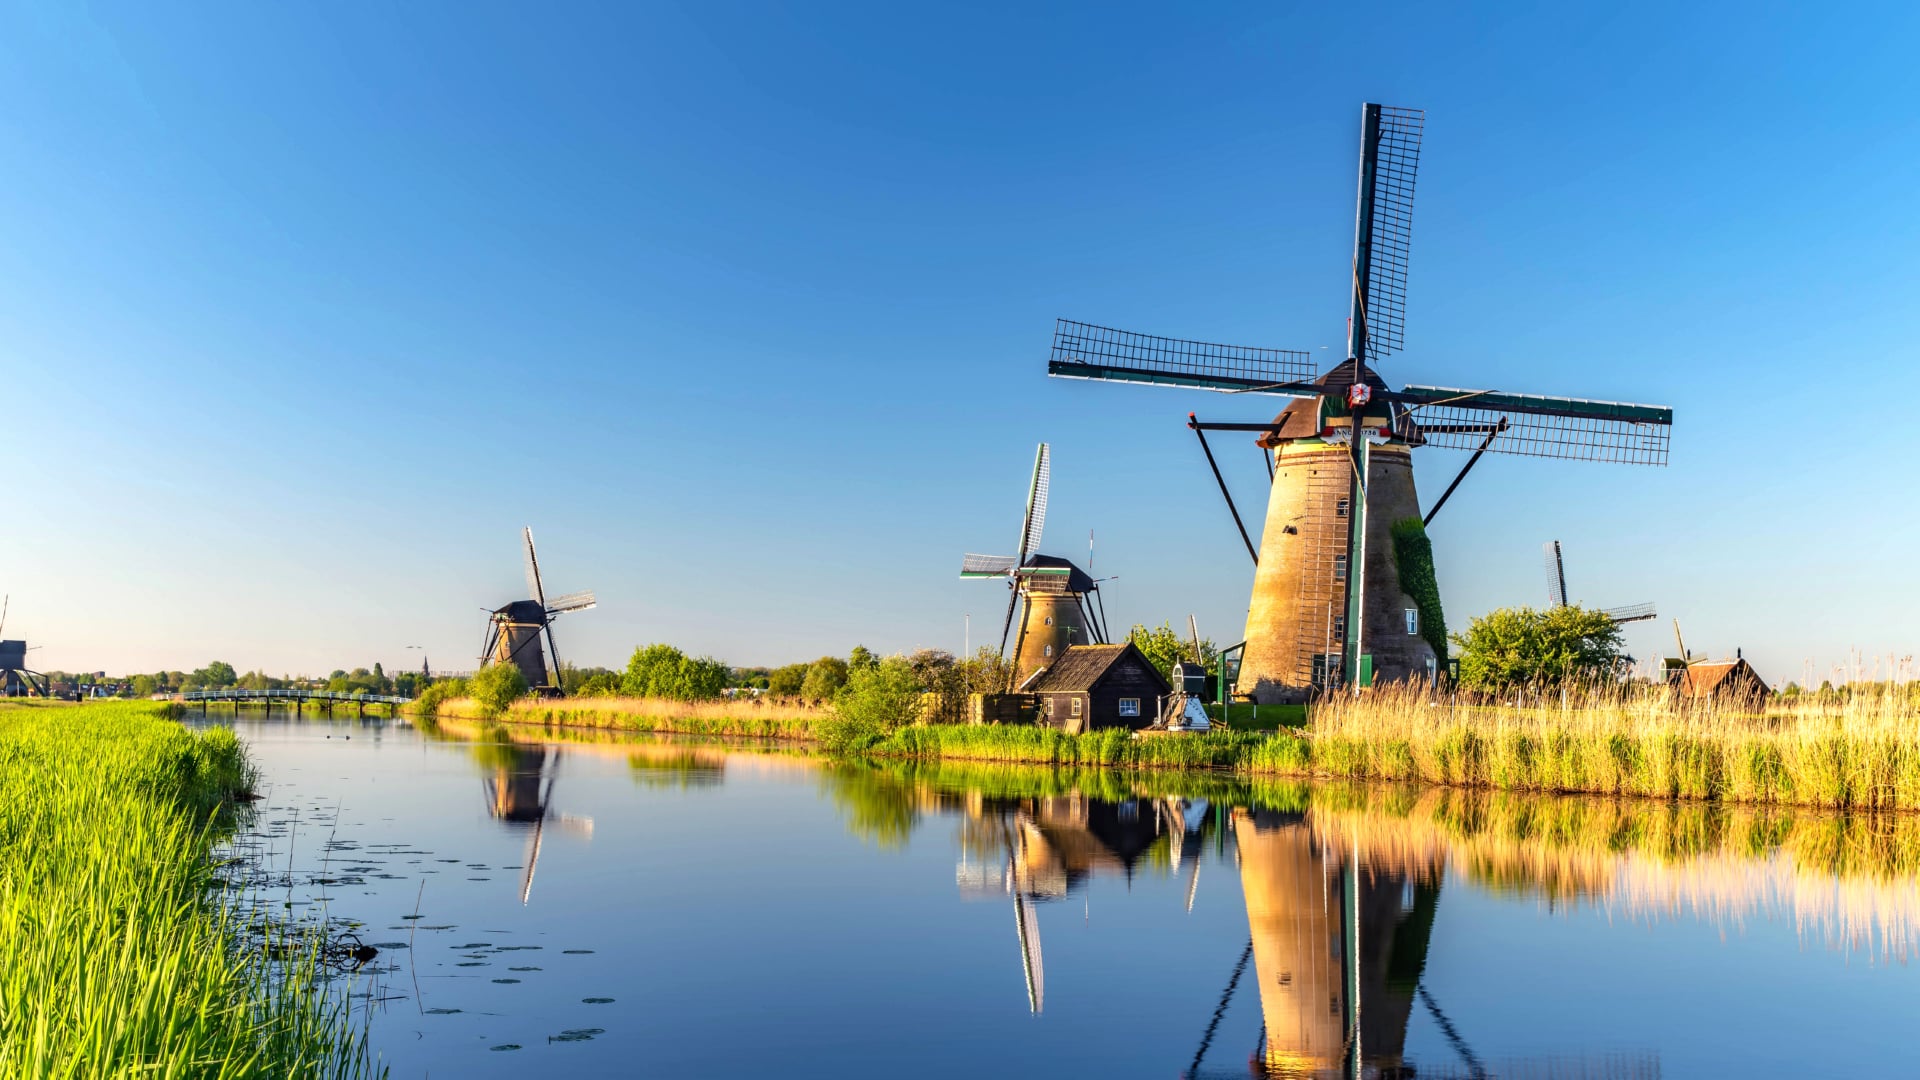 Windmills at Kinderdijk at 1024 x 1024 iPad size wallpapers HD quality